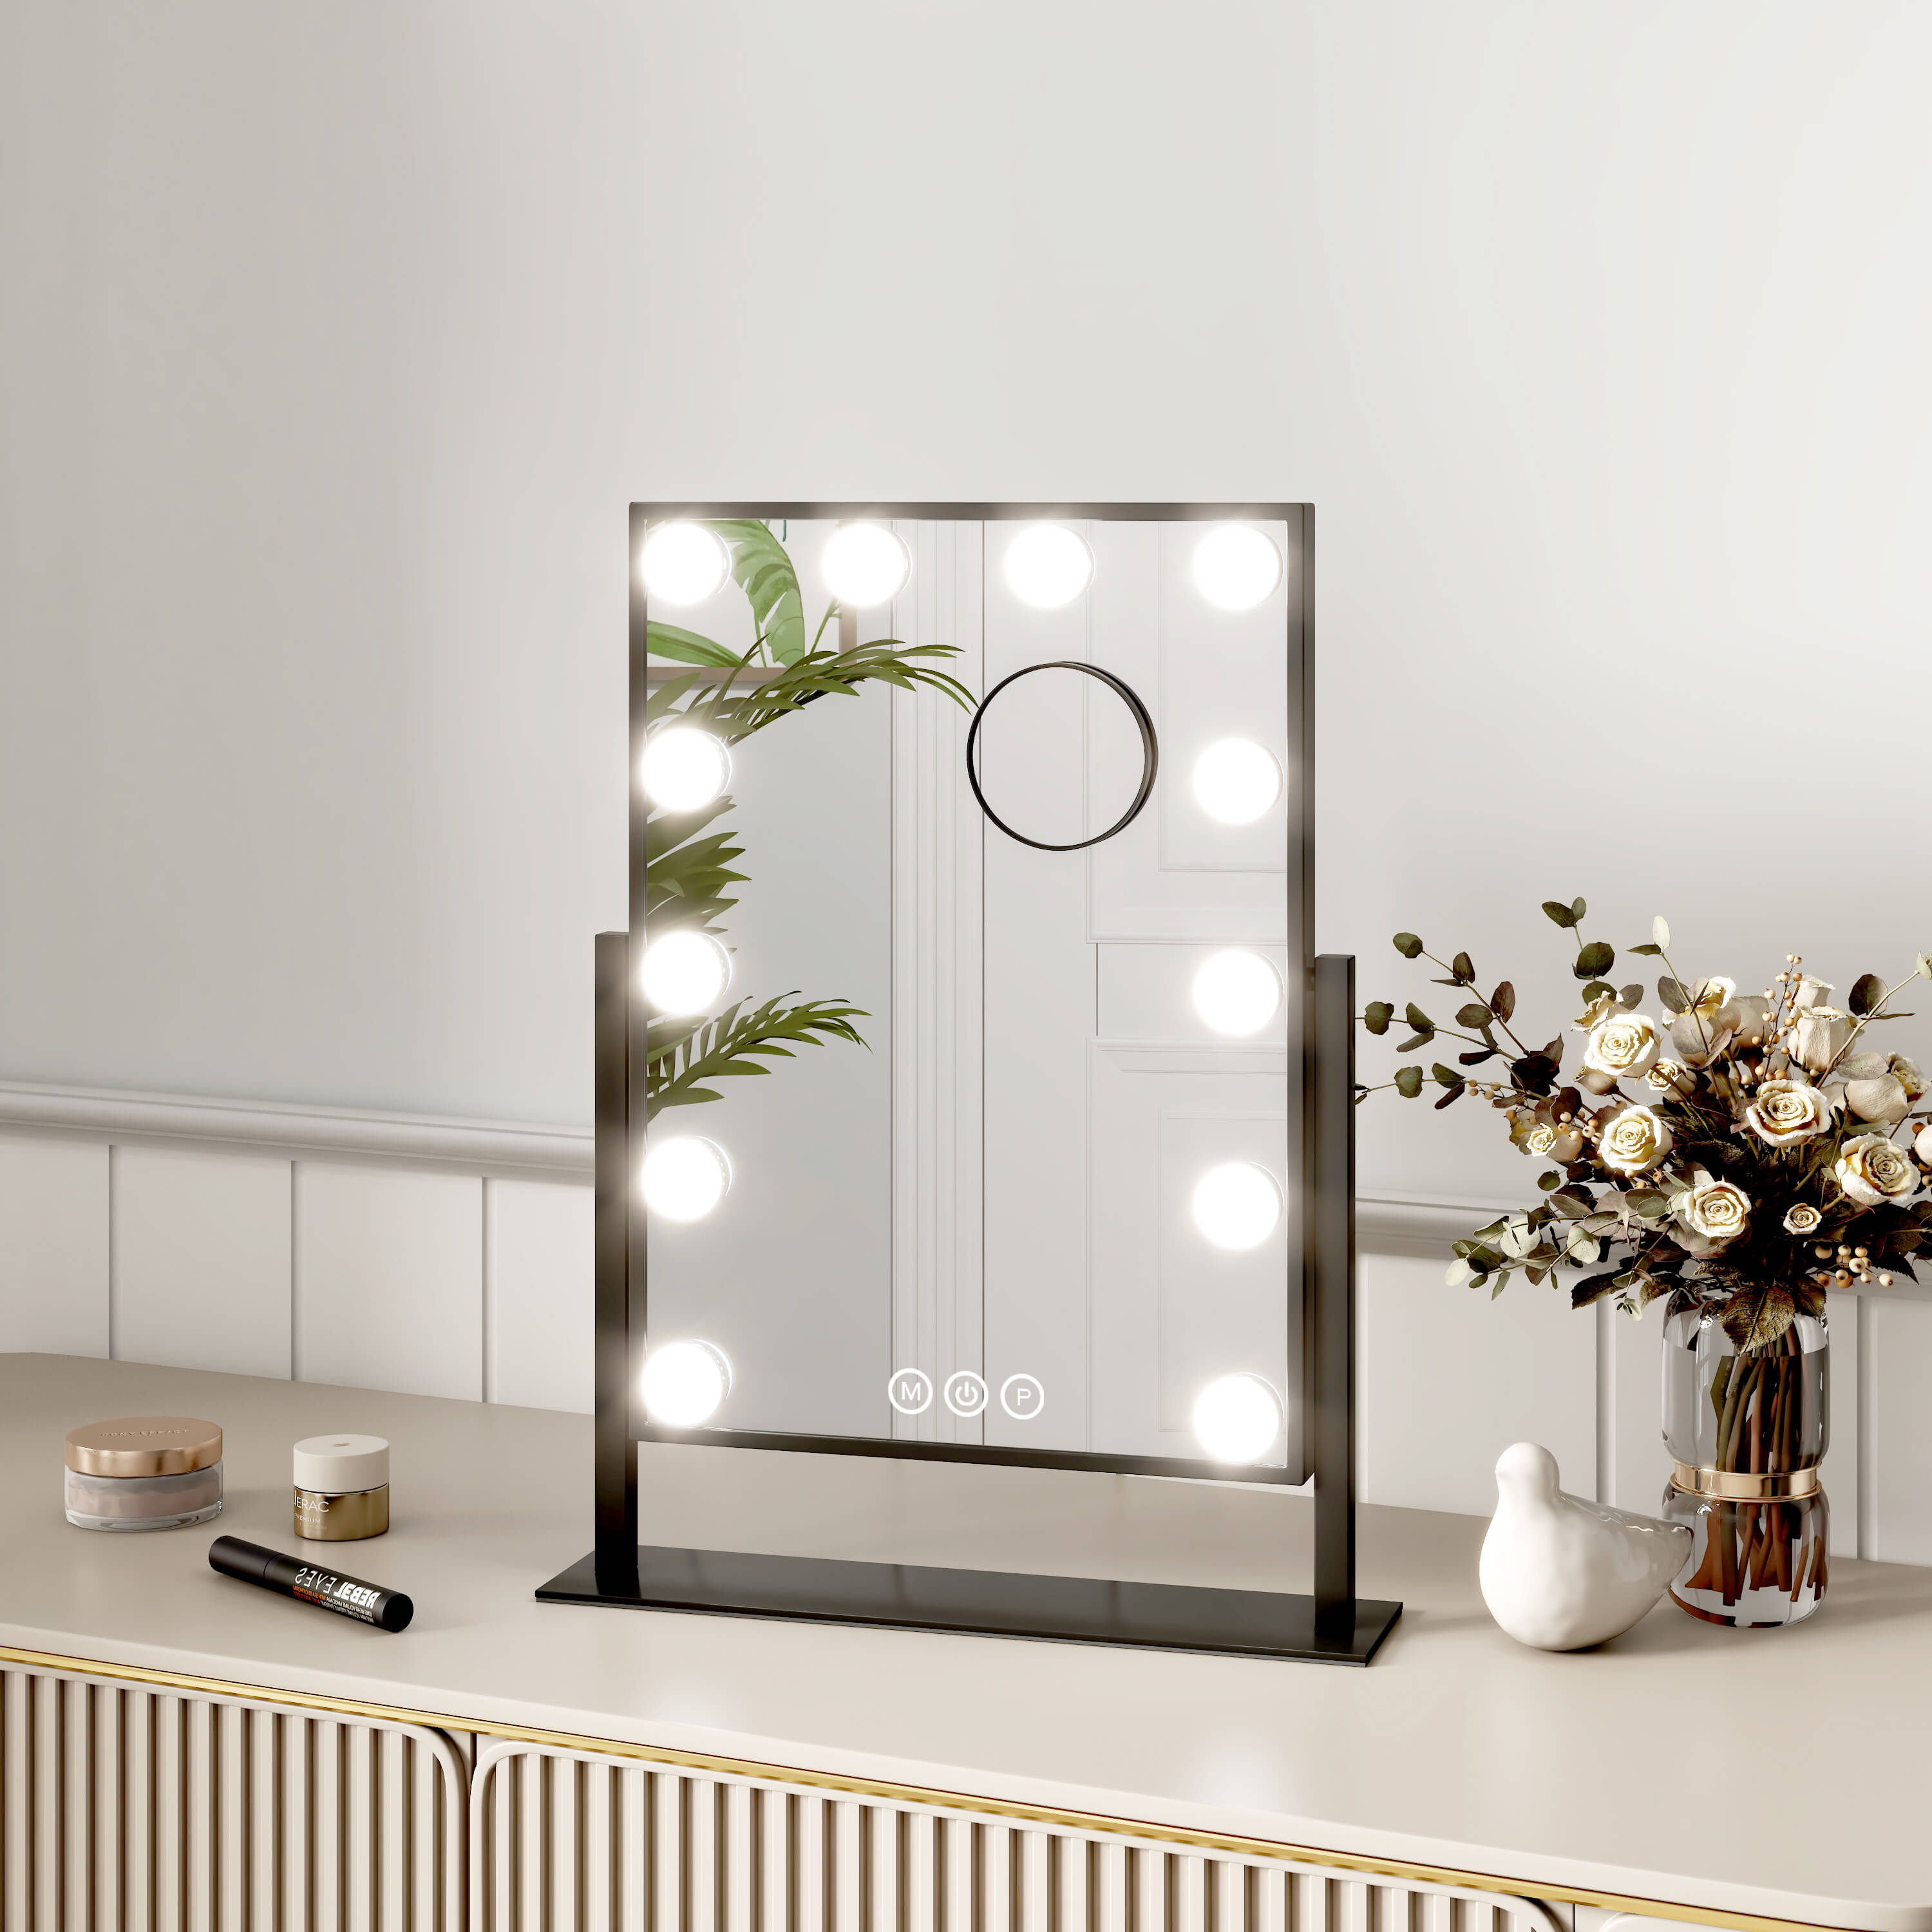 CM12 Hollywood miroir cosmétique avec éclairage, grossissement 7x